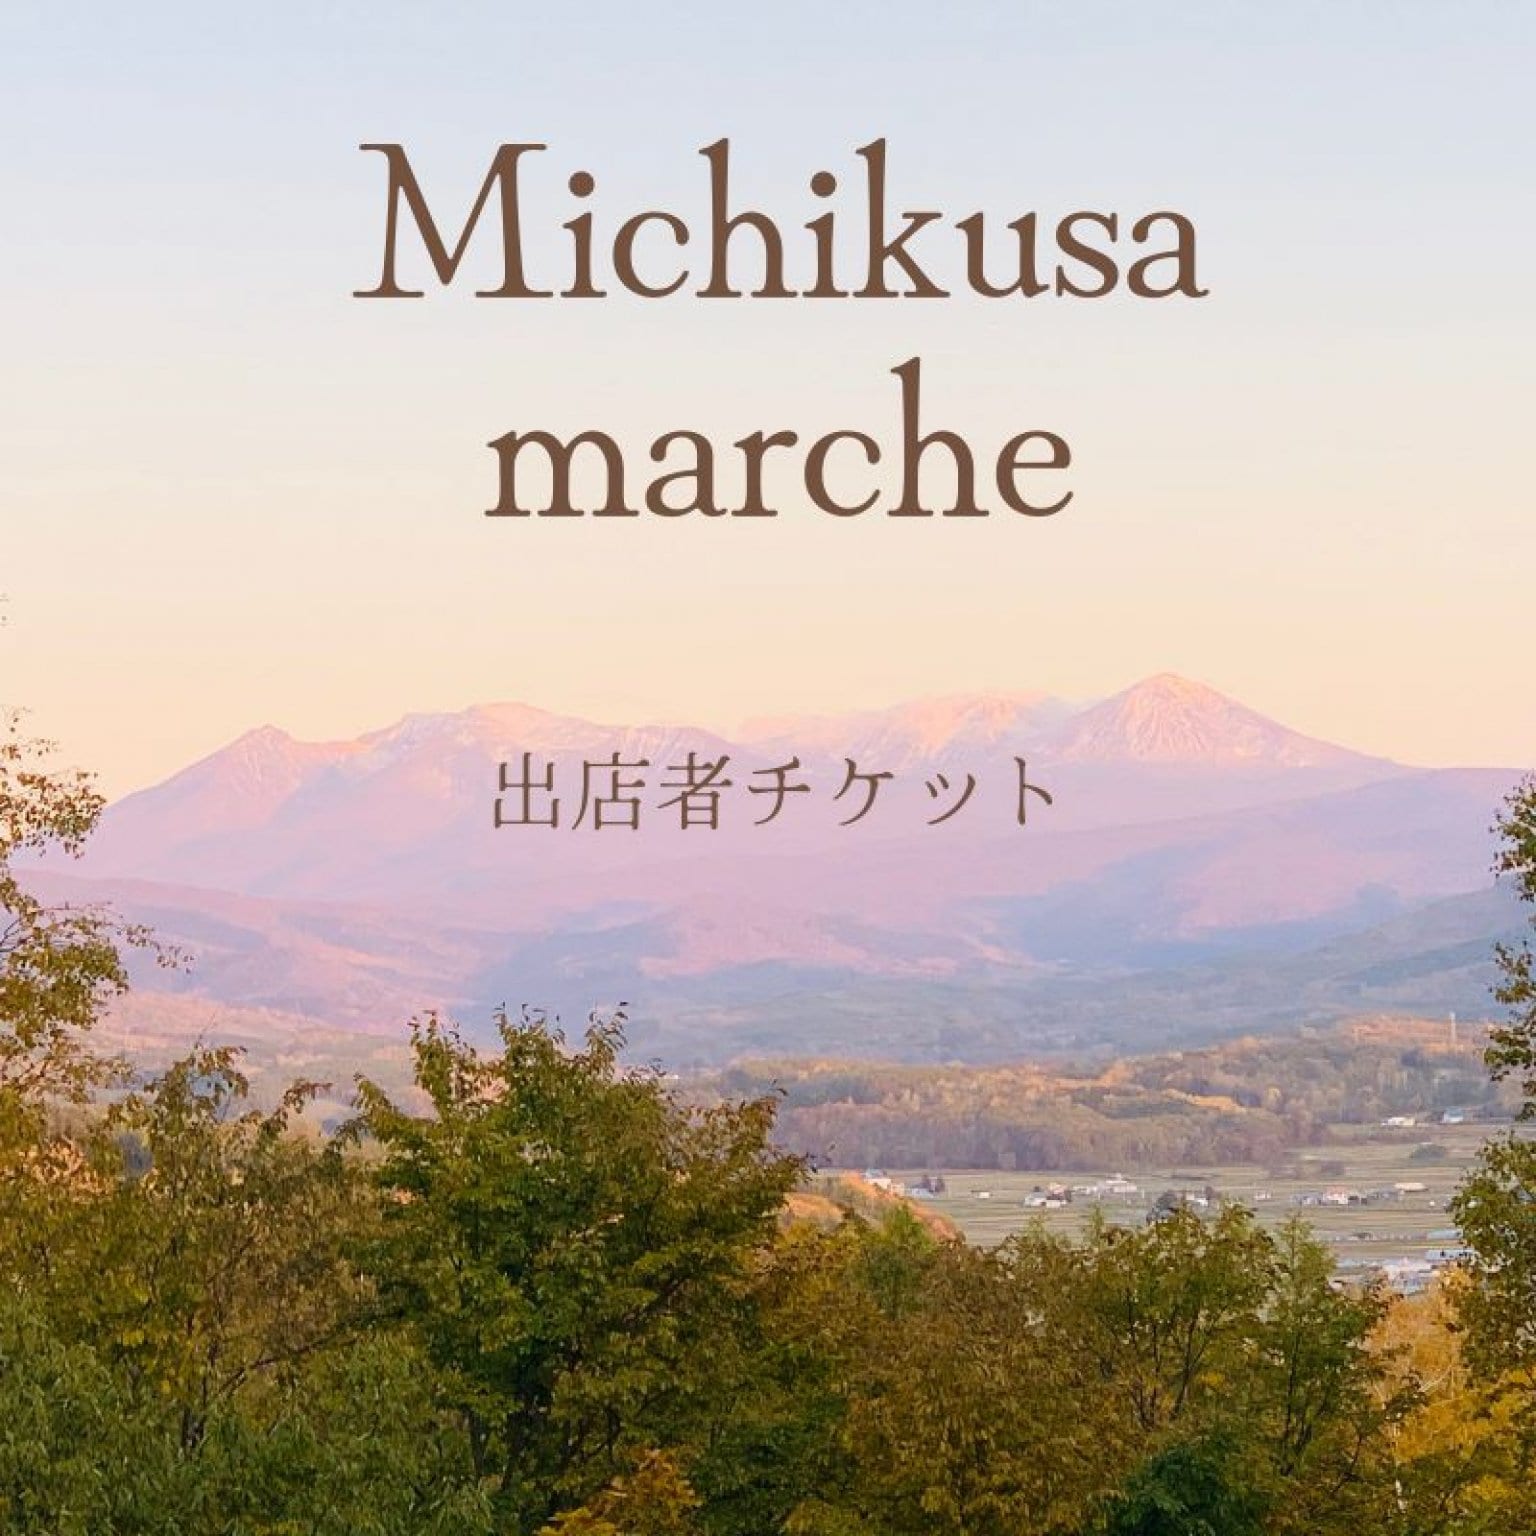 Michikusa Marche出店料